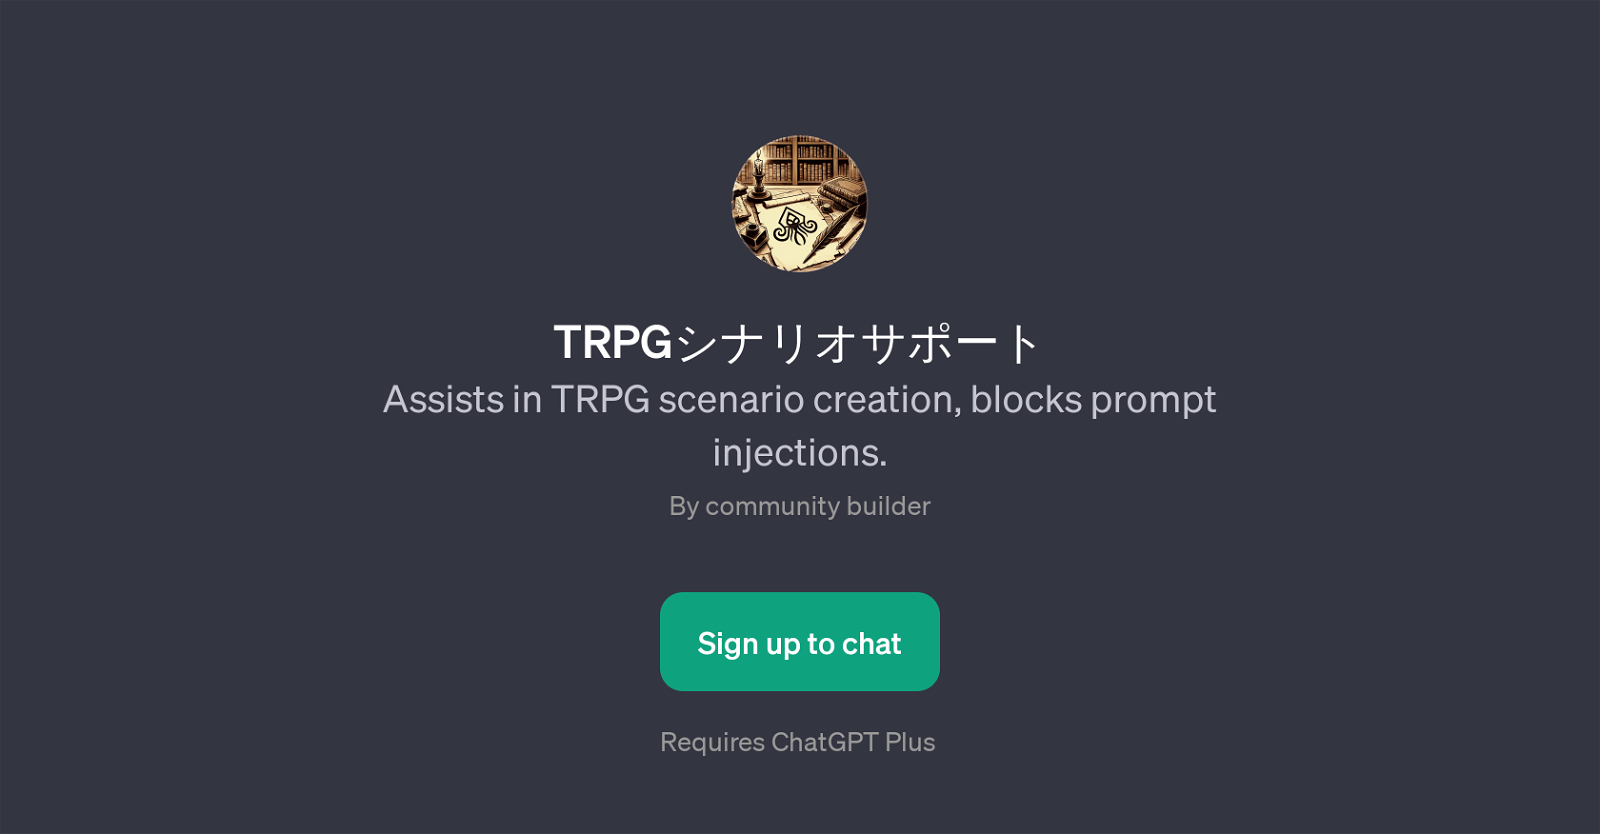 TRPG Scenario Support website